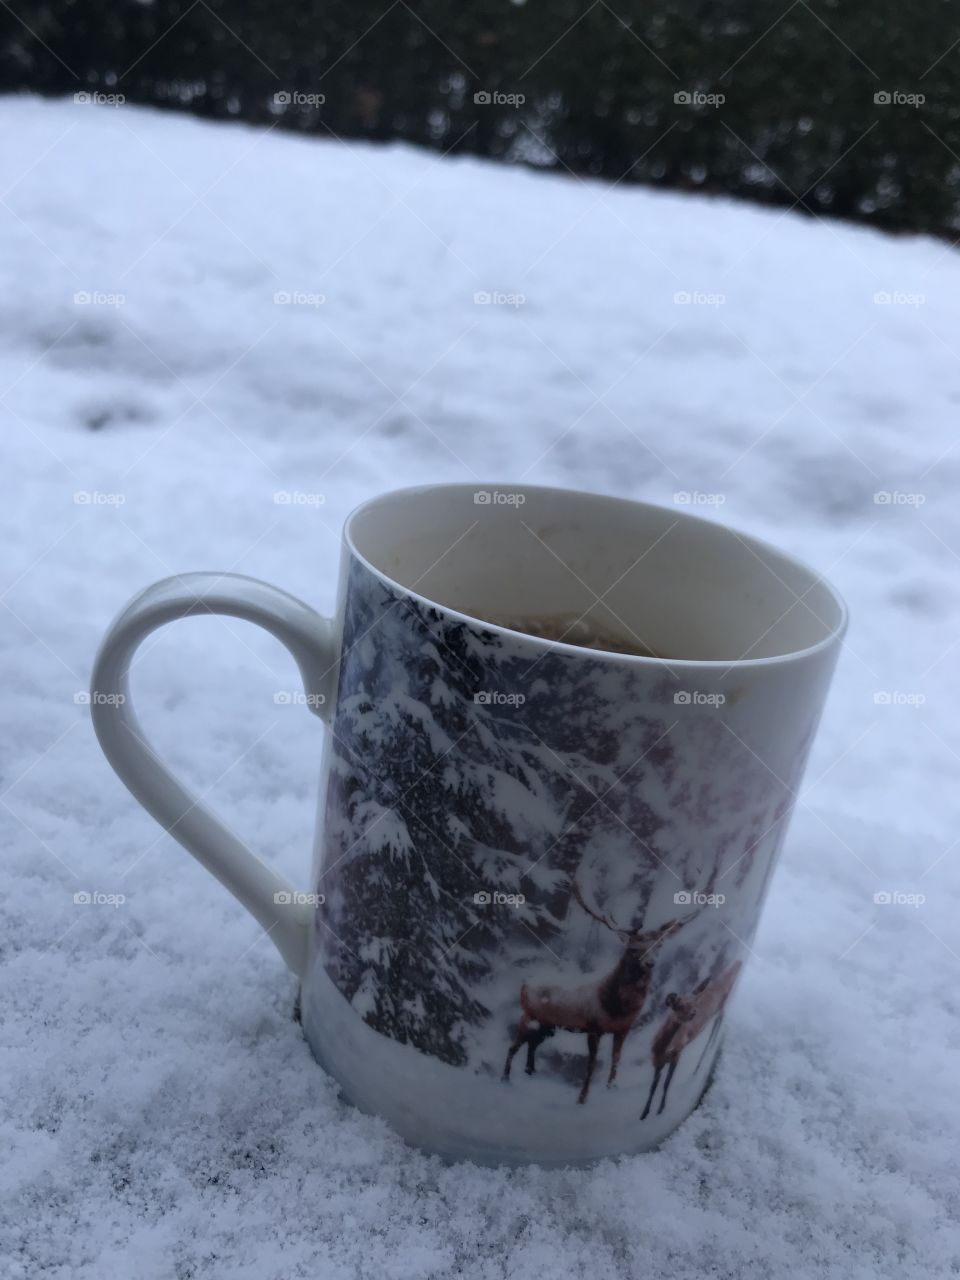 Snow mug